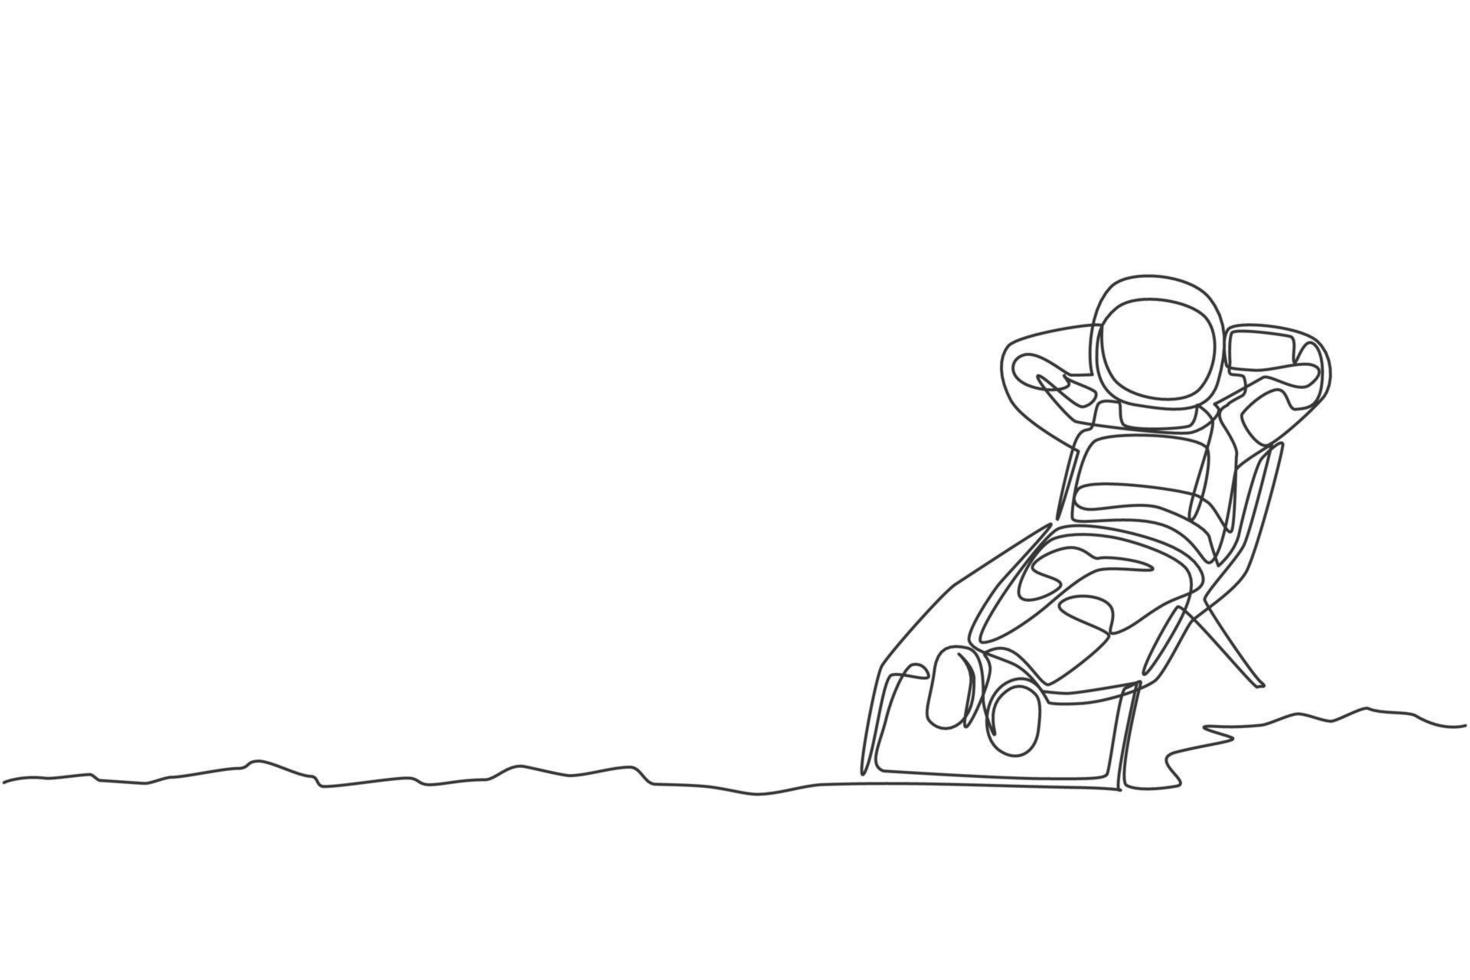 disegno a linea continua di un giovane astronauta che si abbronza e fa un pisolino sul sole più a lungo sulla superficie lunare. concetto di galassia cosmica dell'uomo dello spazio. illustrazione vettoriale di design alla moda con una linea di disegno